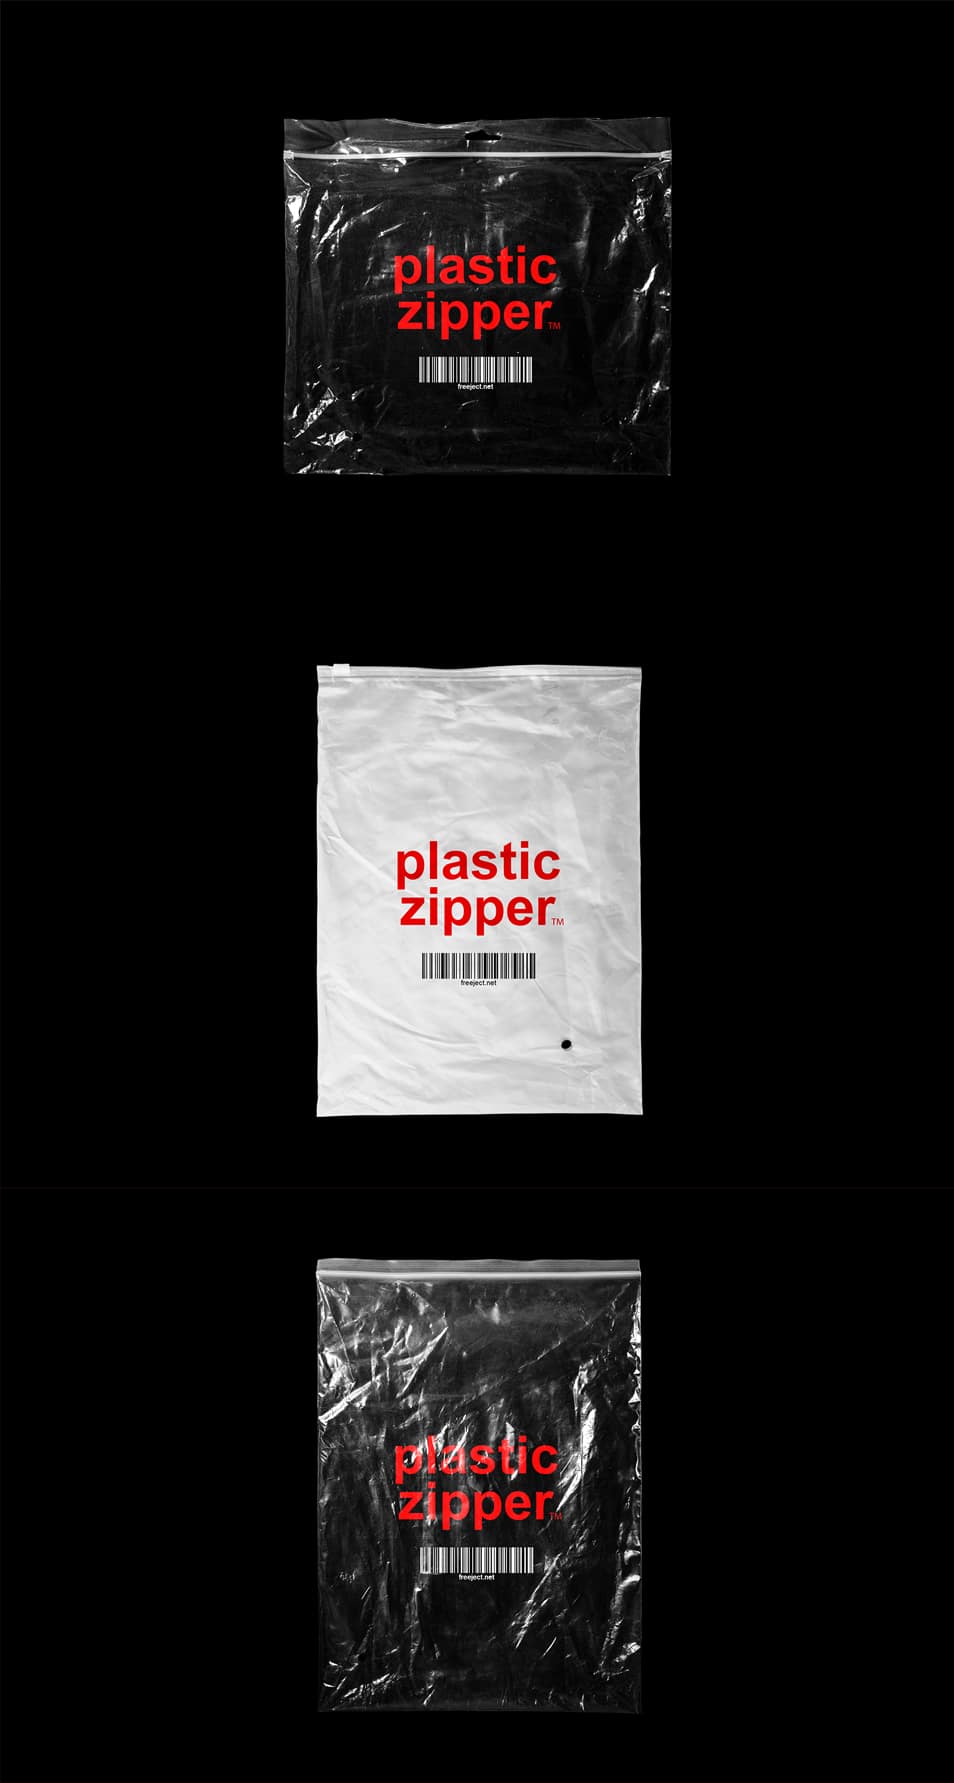 3 Plastic Zipper Bag Mockup PSD